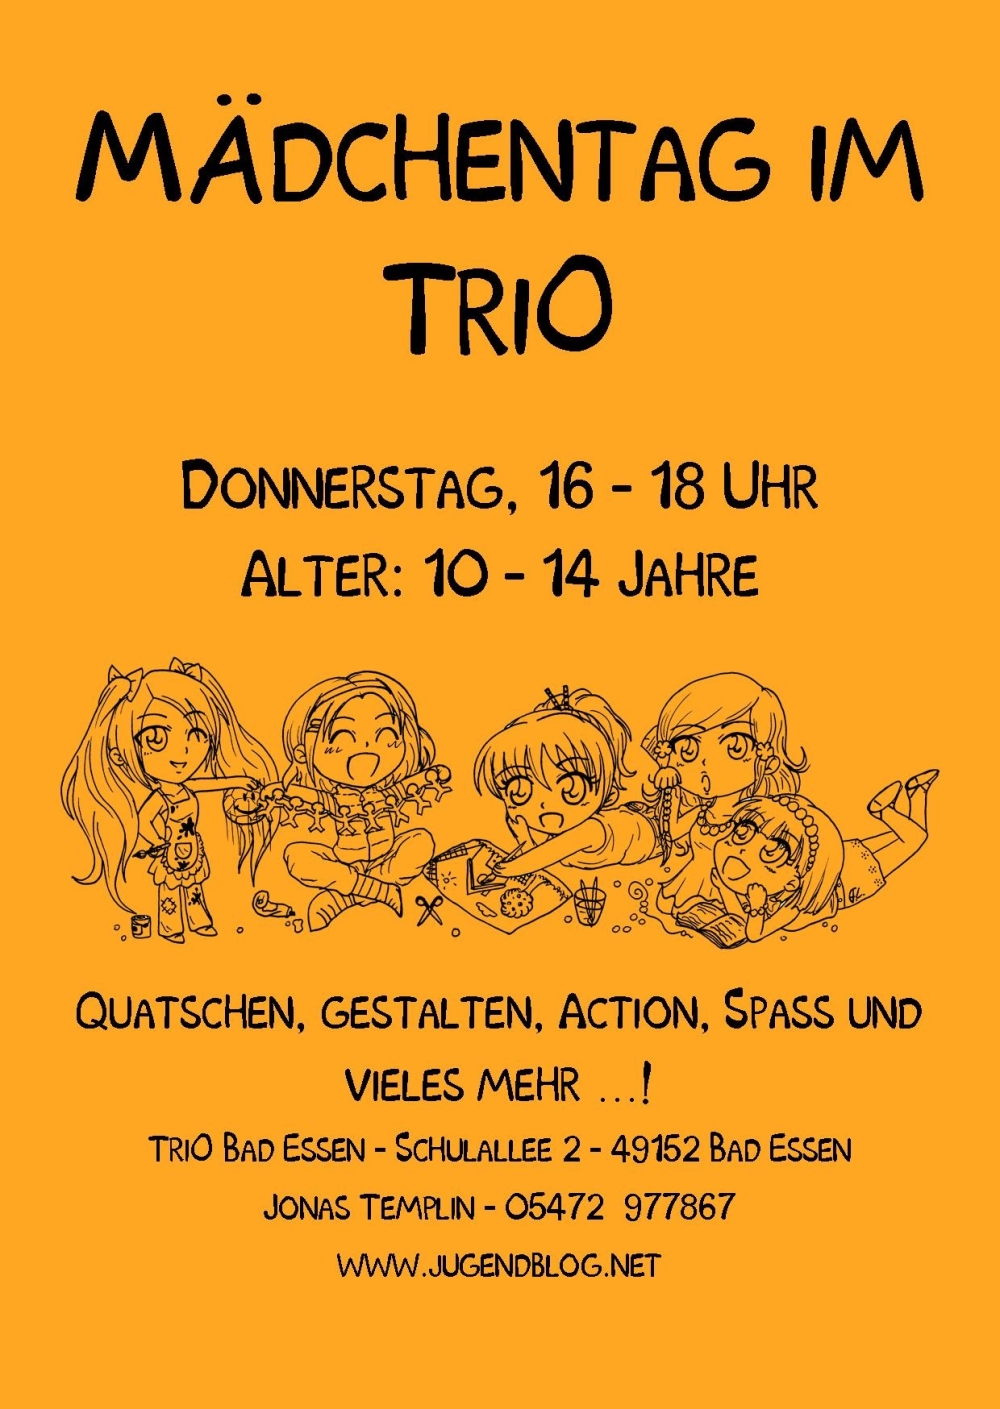 Mädchentag front Publisher 03.2015 Orange